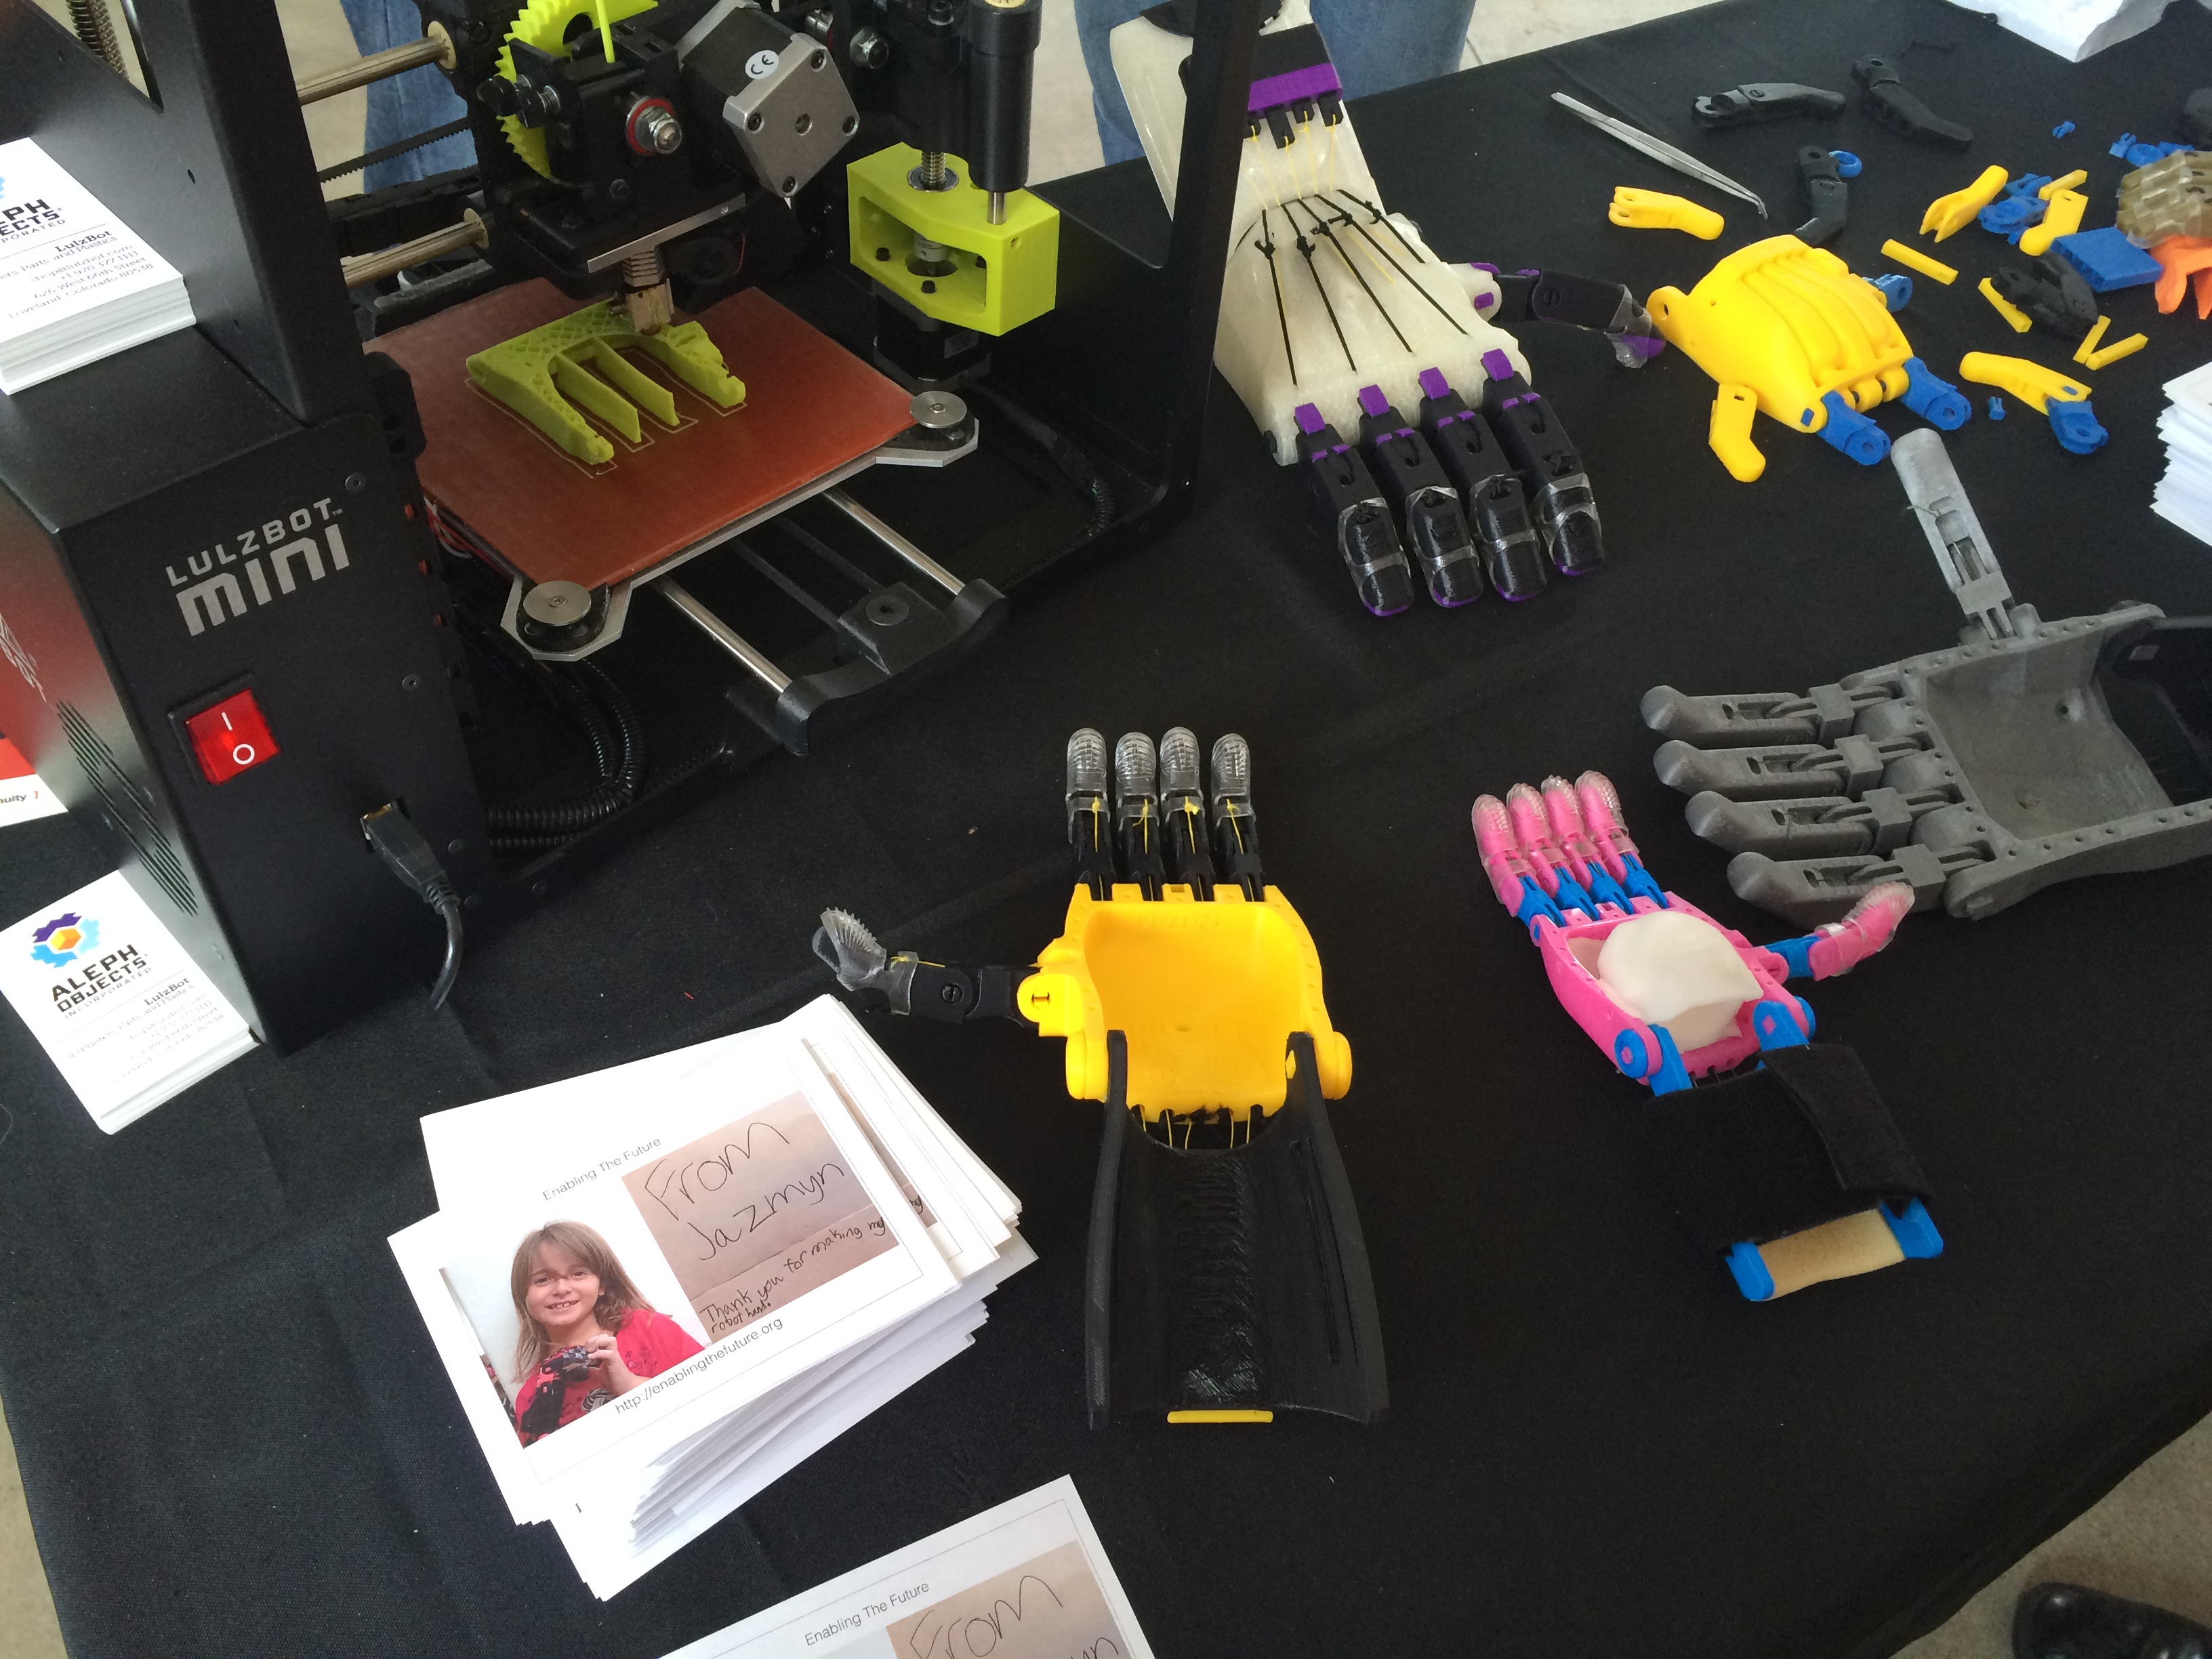 3D printer making prosthetic hands